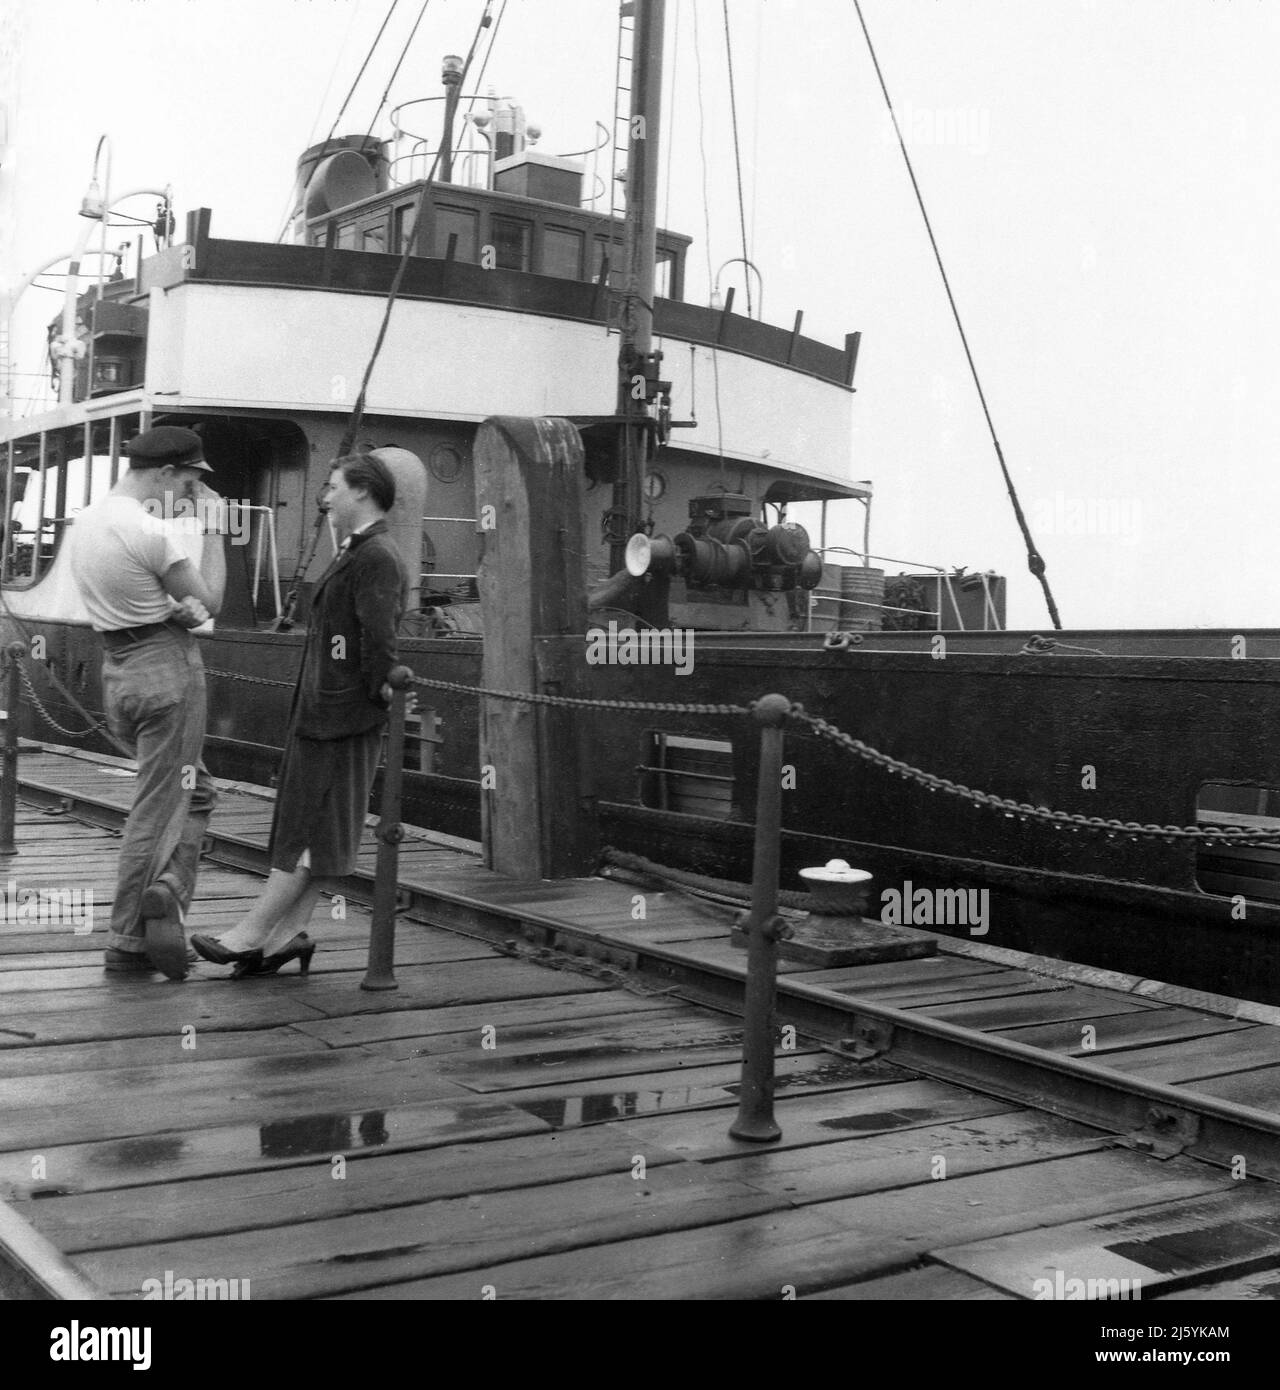 1960, storica, in piedi su una banchina di legno bagnata, un giovane marinaio maschio in t-shirt e cappellino che parla con una giovane donna, Birkenhead Docks, Mersey, Liverpool, Inghilterra, REGNO UNITO. La nave da carico, Seatern è ormeggiata. Foto Stock